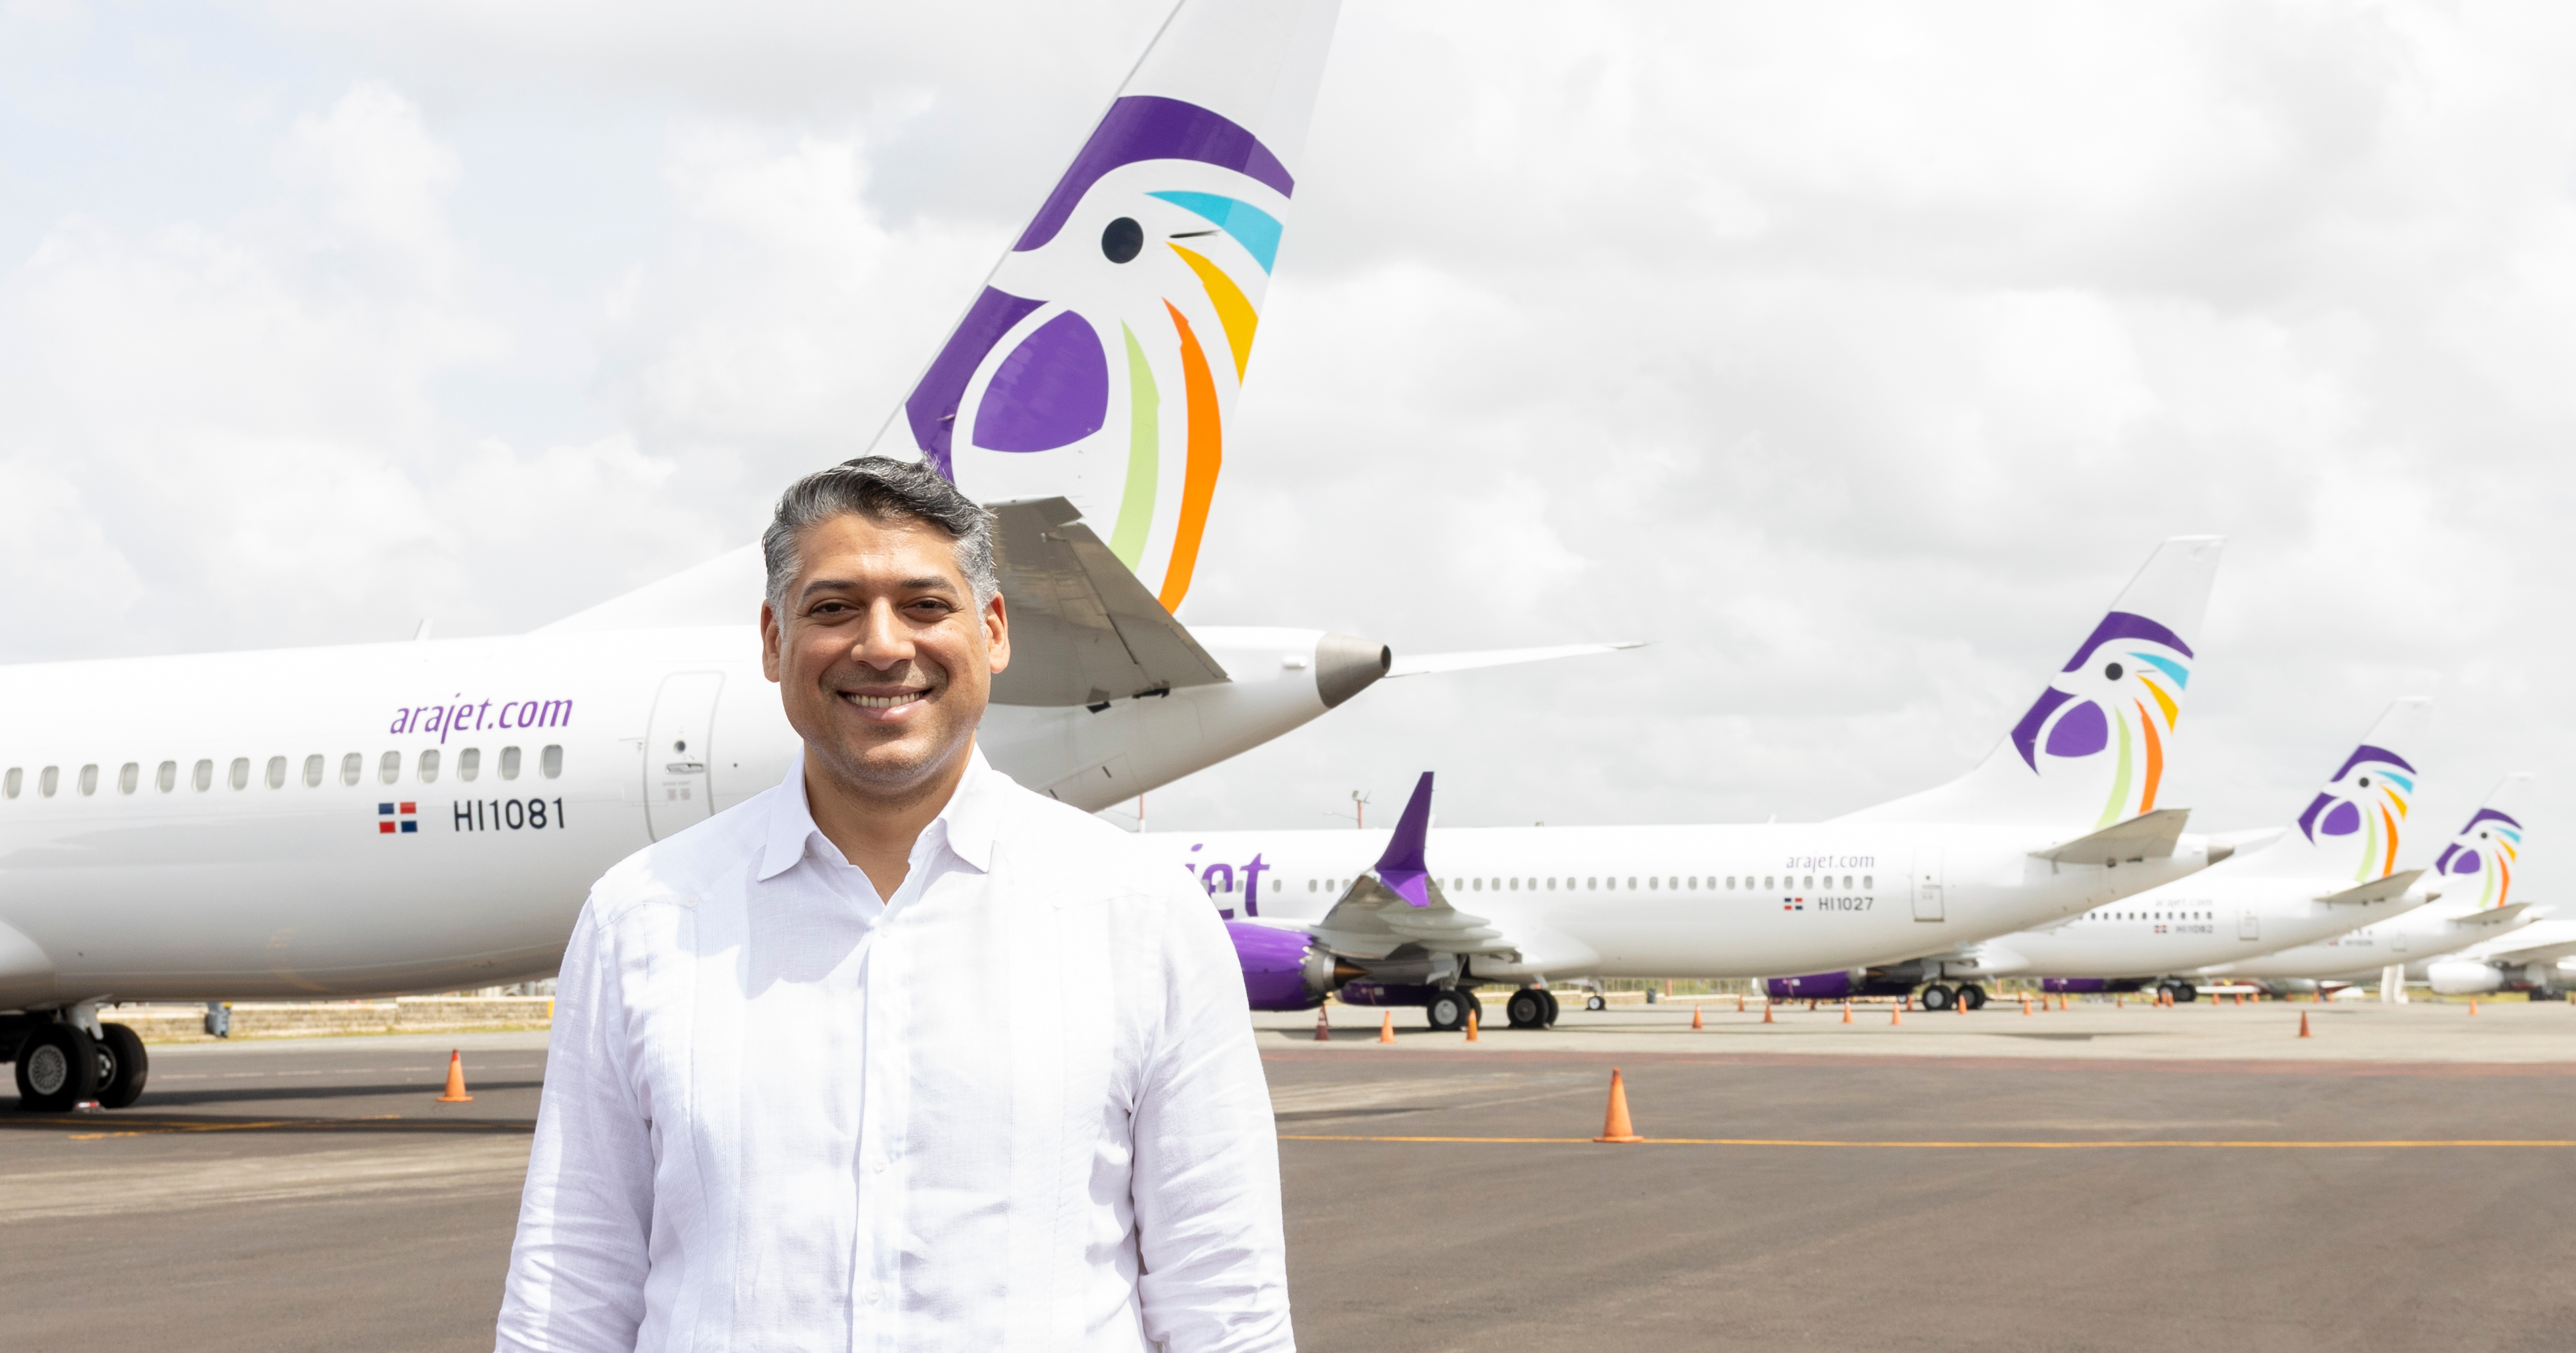 Arajet espera transportar a más de 7 millones de visitantes a la República Dominicana